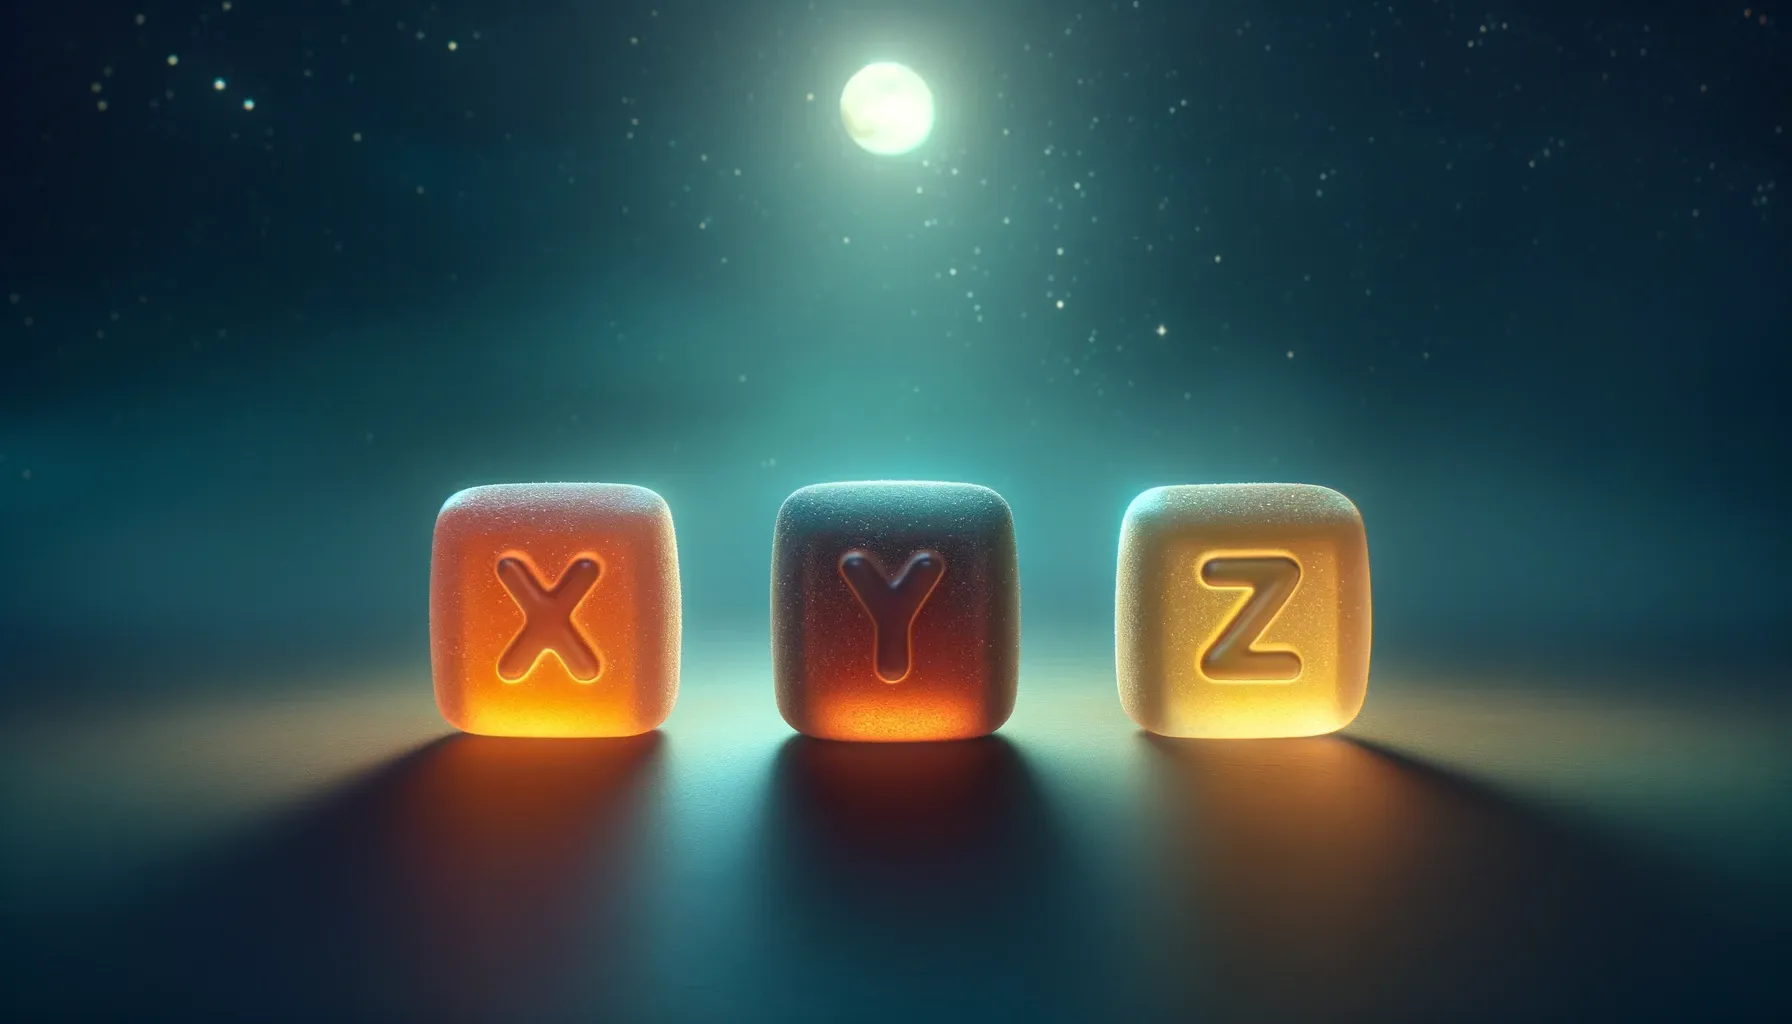 Distinct sleep gummies labeled 'Gummy X', 'Gummy Y', and 'Gummy Z' on a nighttime backdrop.